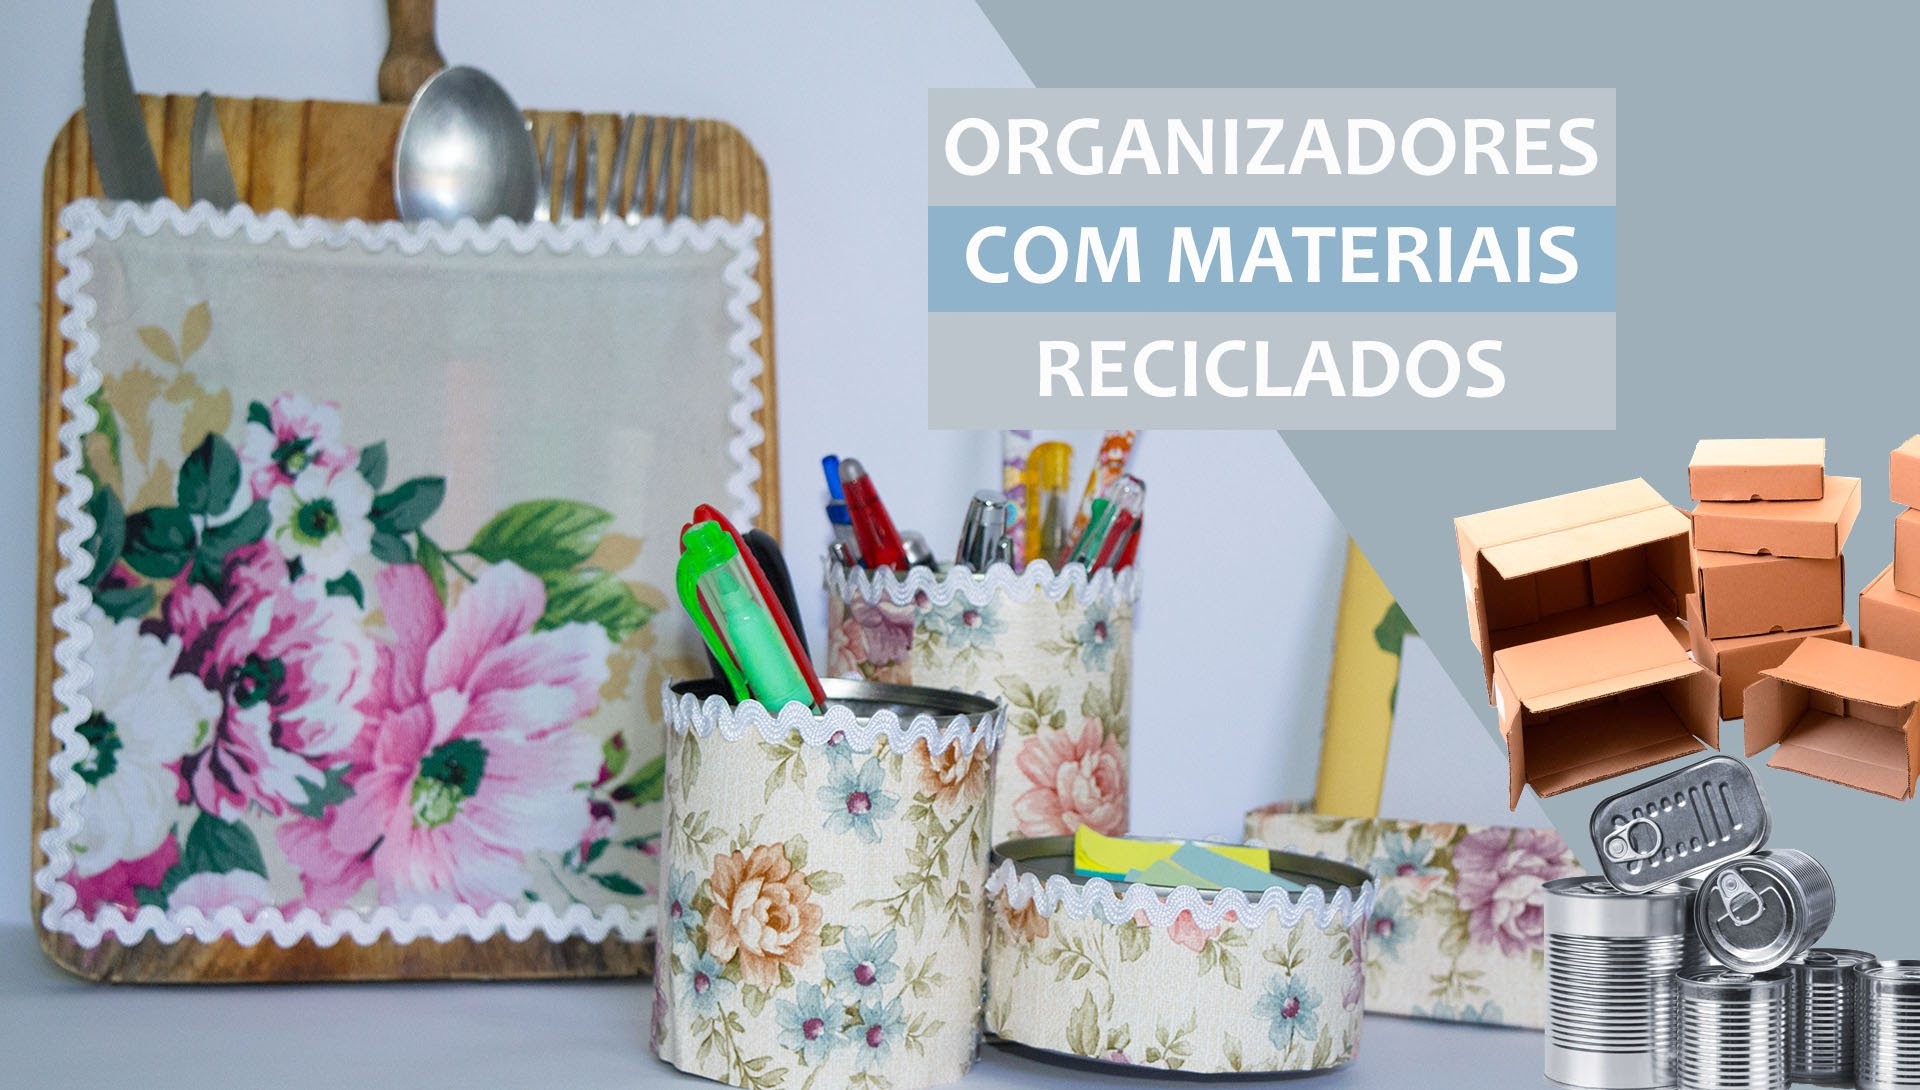 DIY: Organizadores para casa feitos com materiais reciclados (3 ideias)